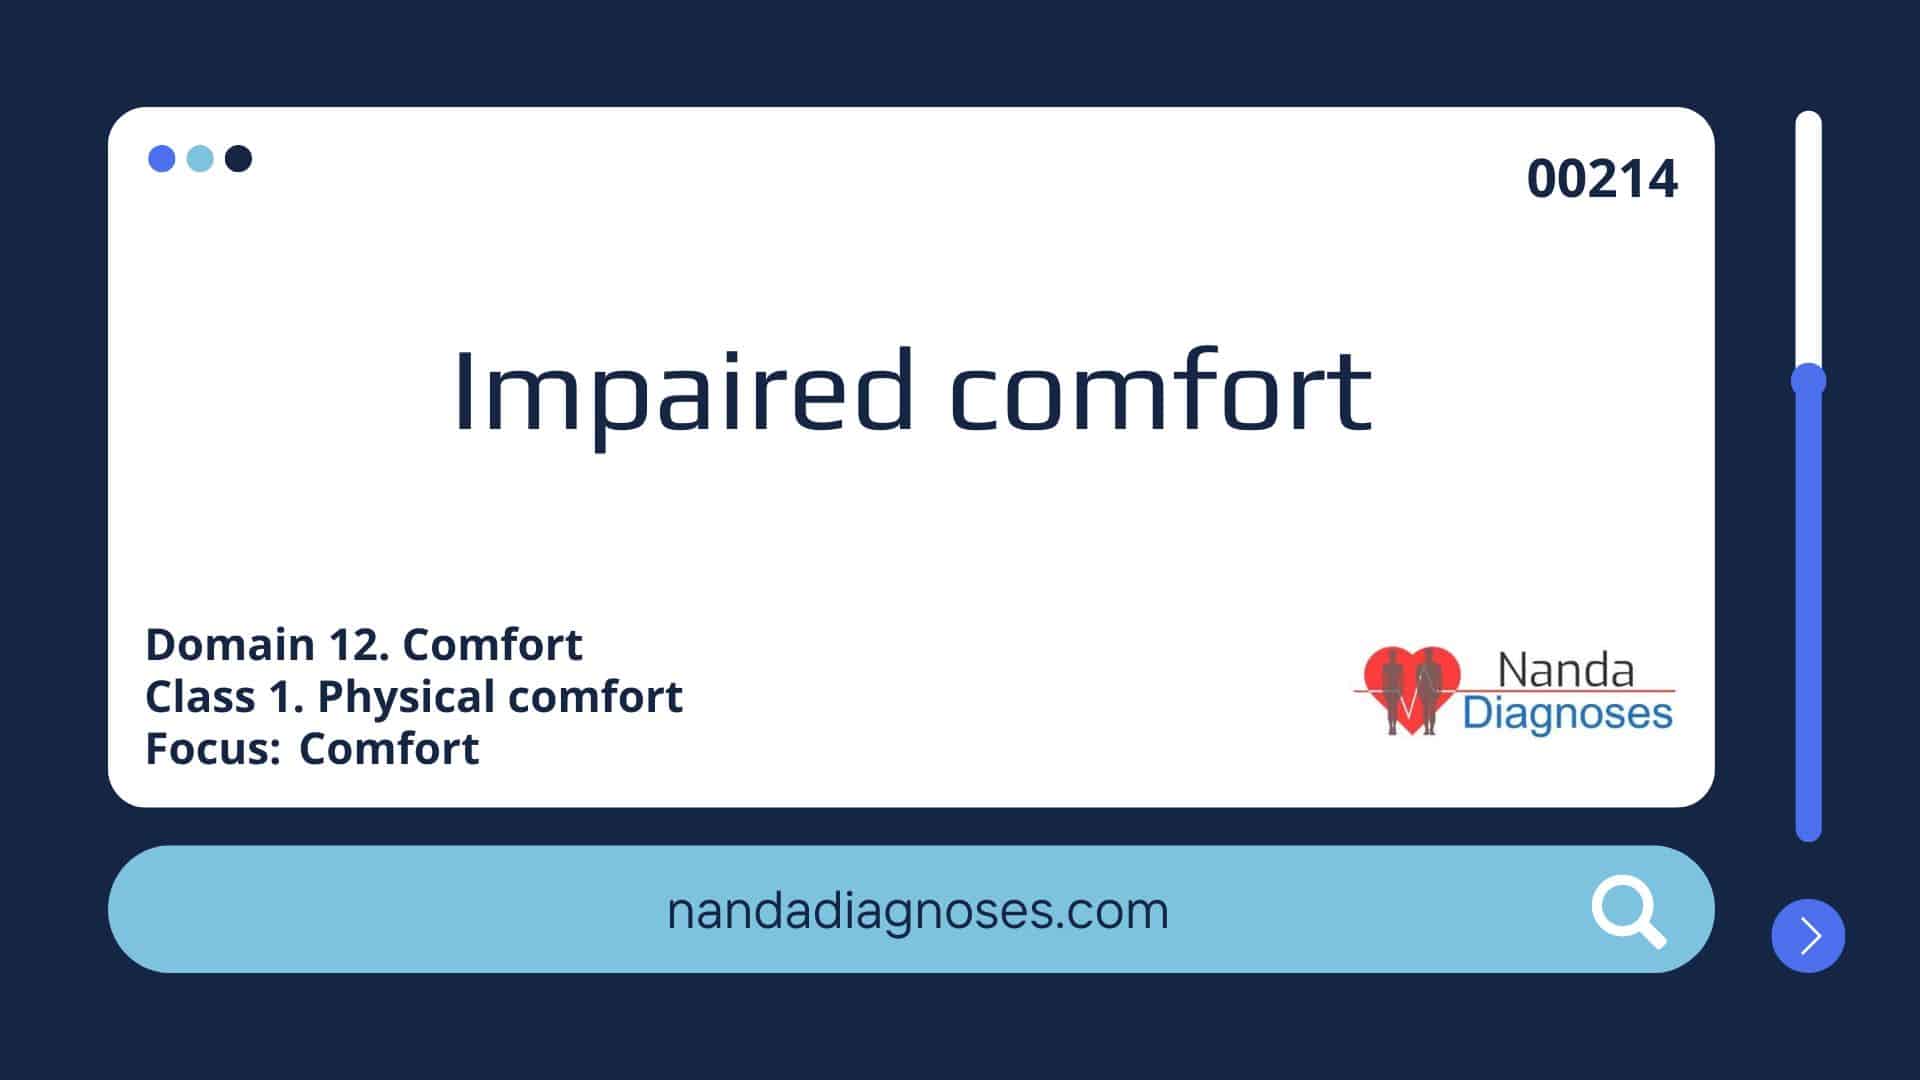 Nursing diagnosis Impaired comfort